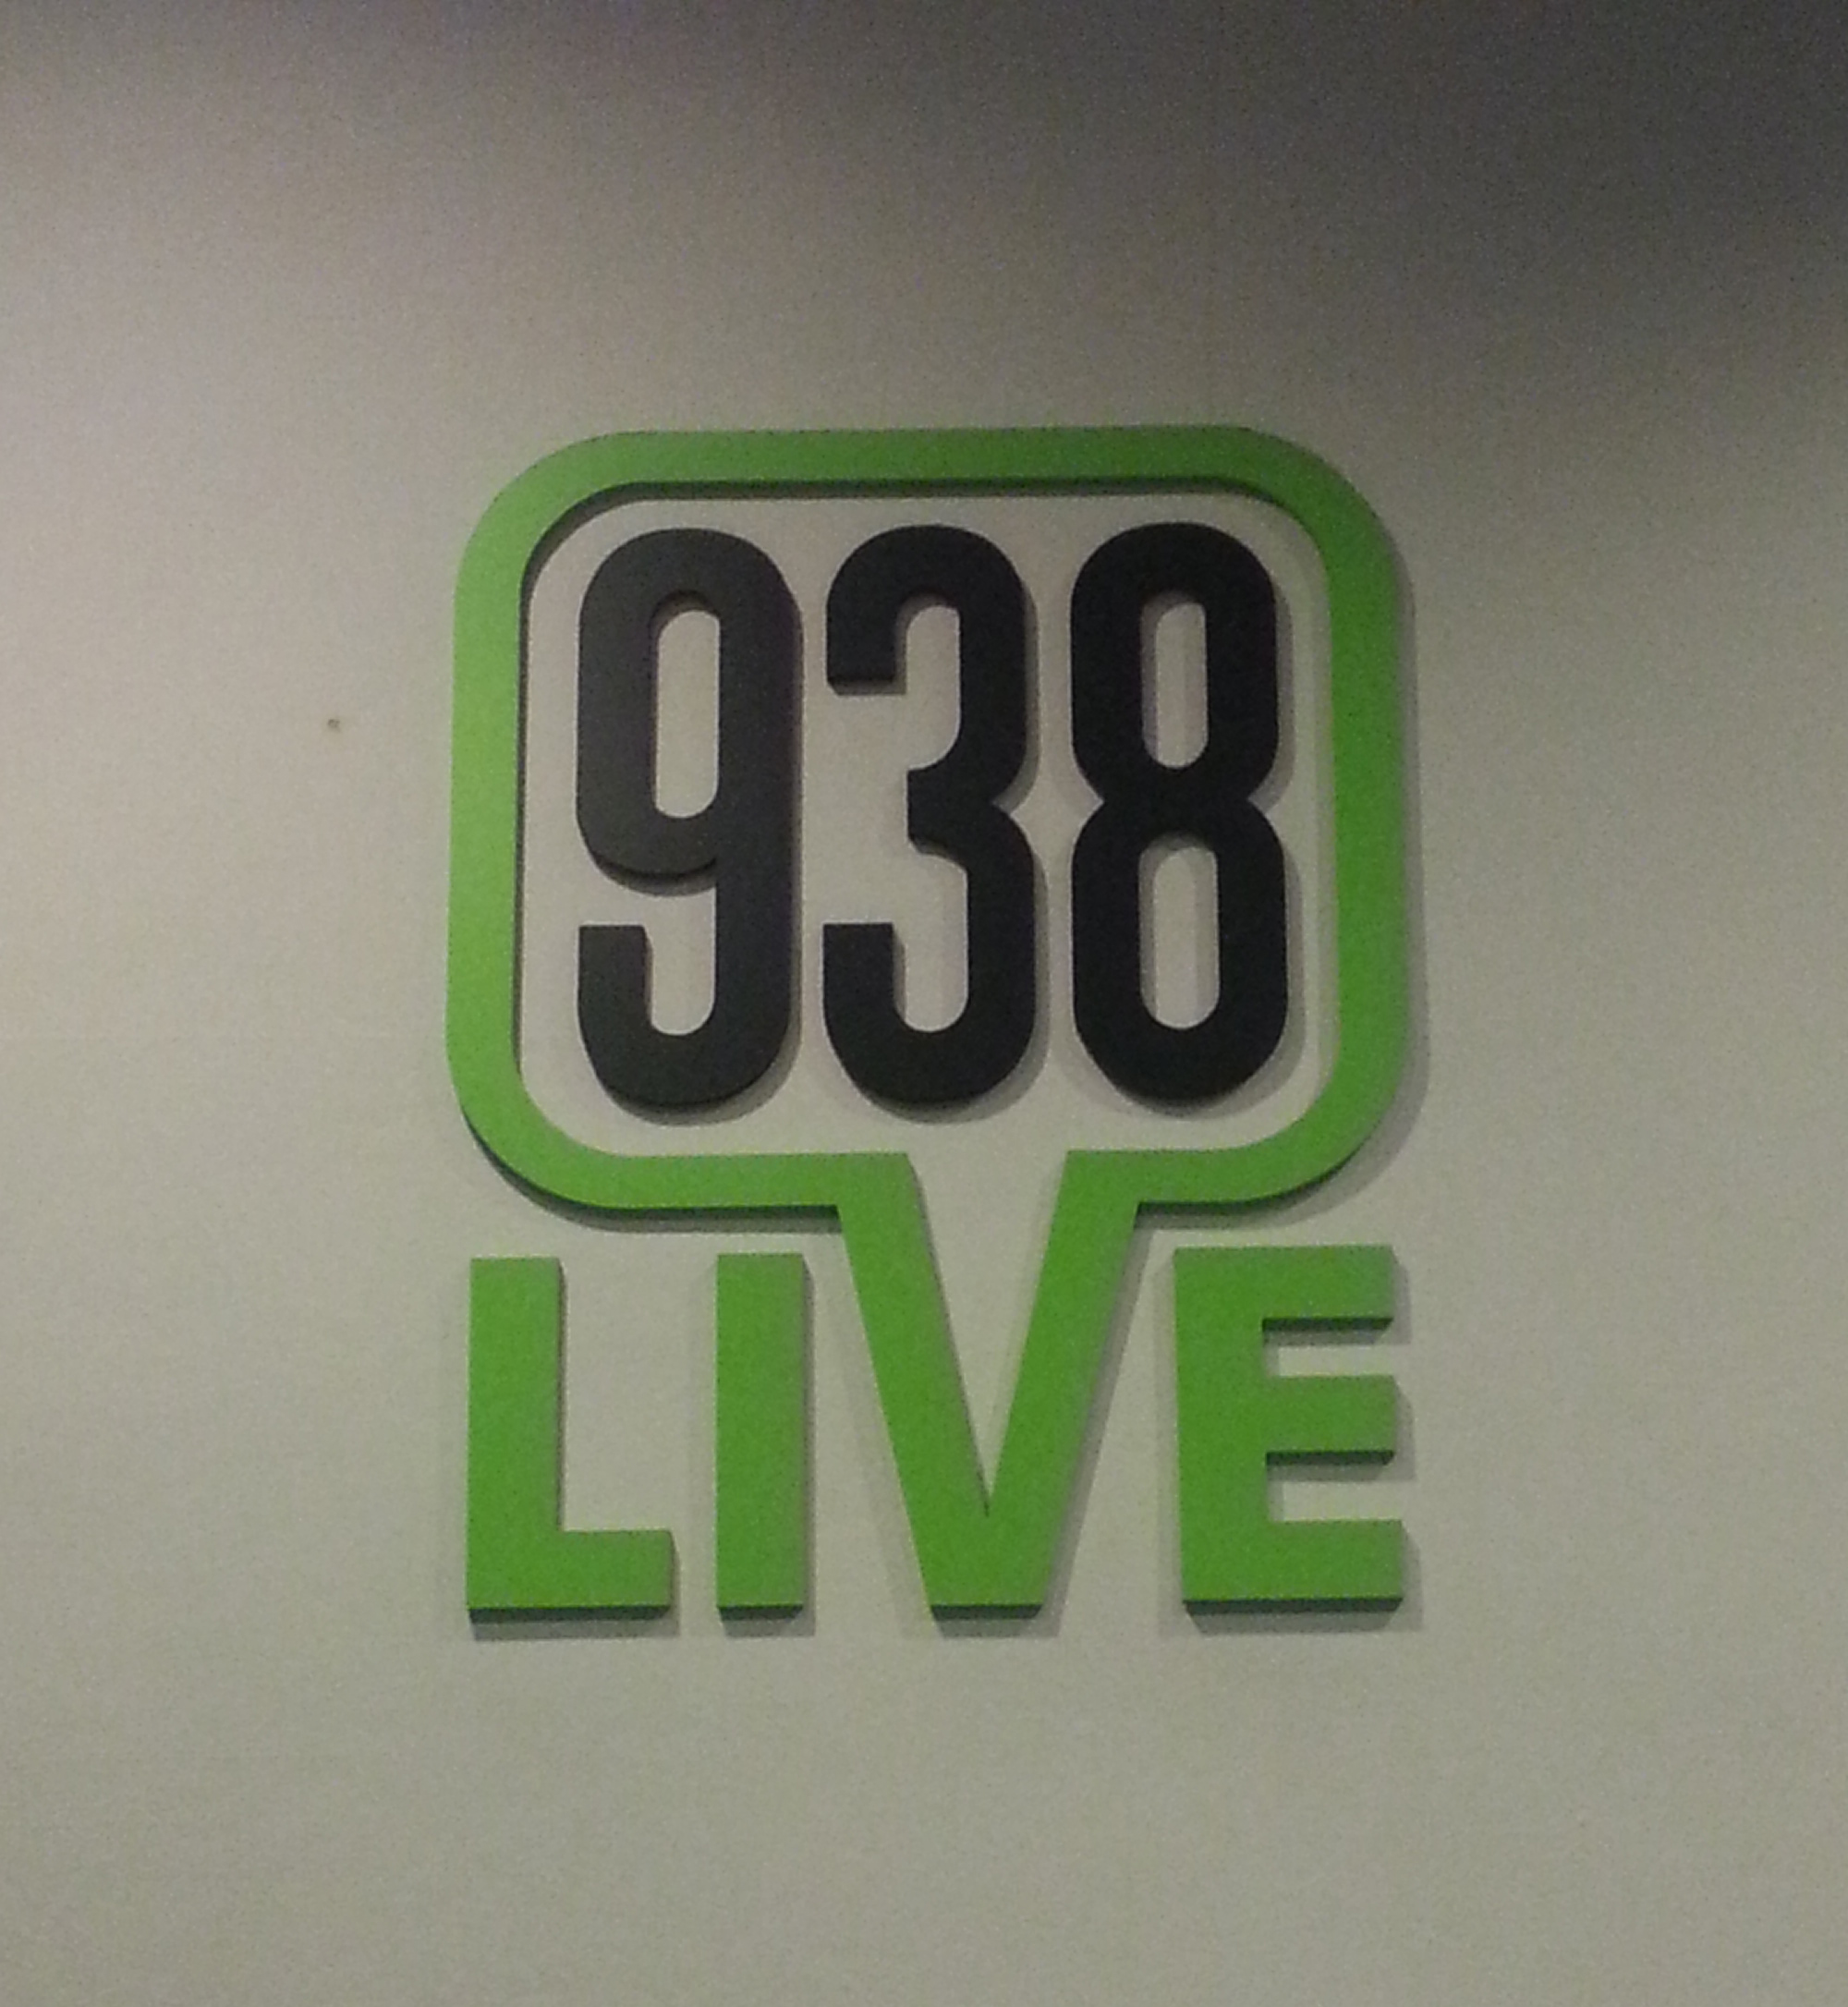 938 LIVE Studio